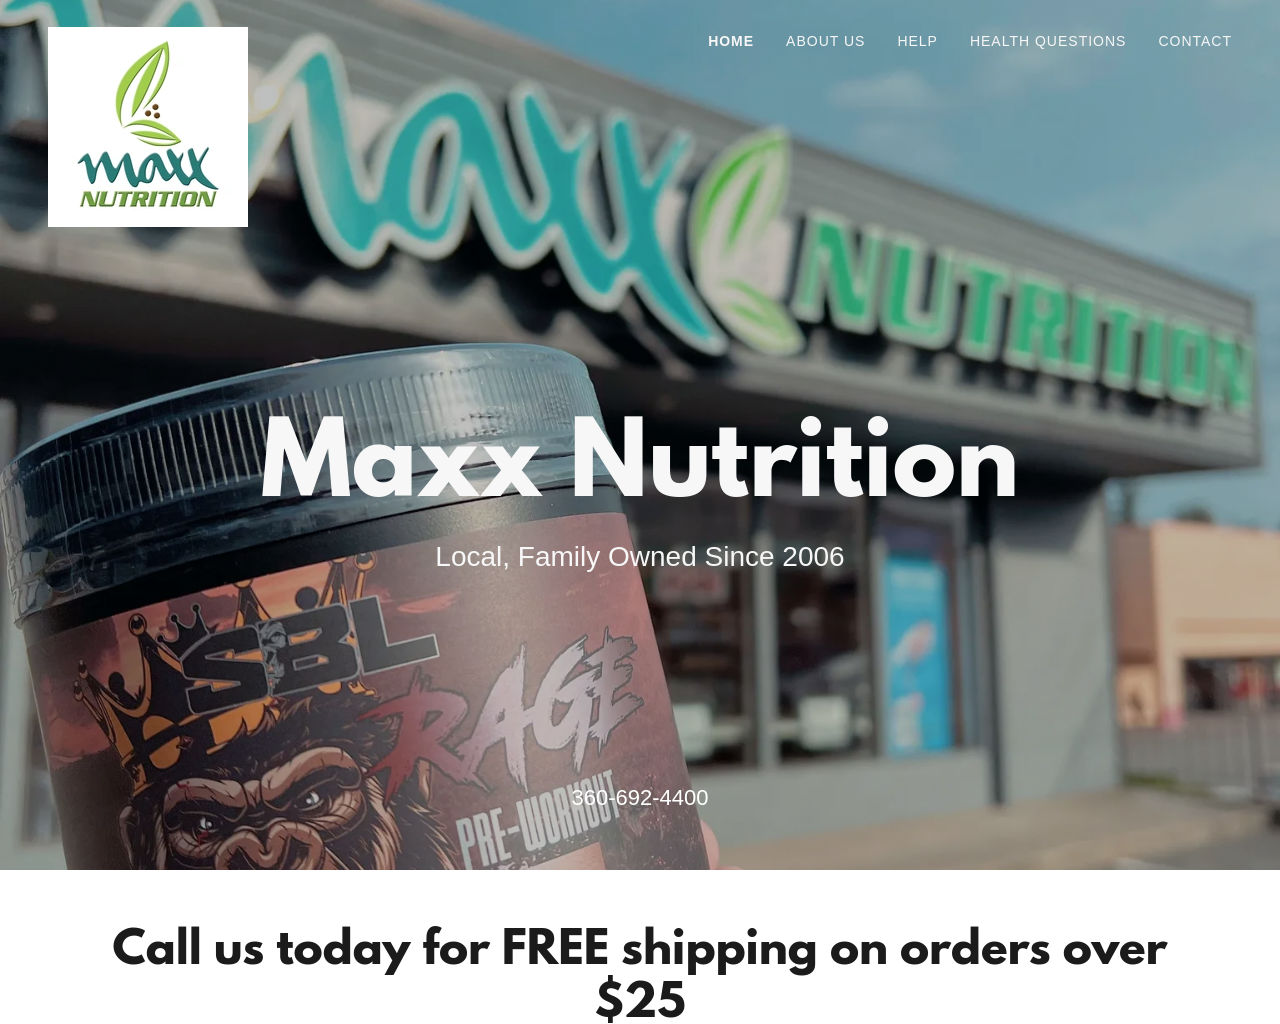 maxxnutrition.com